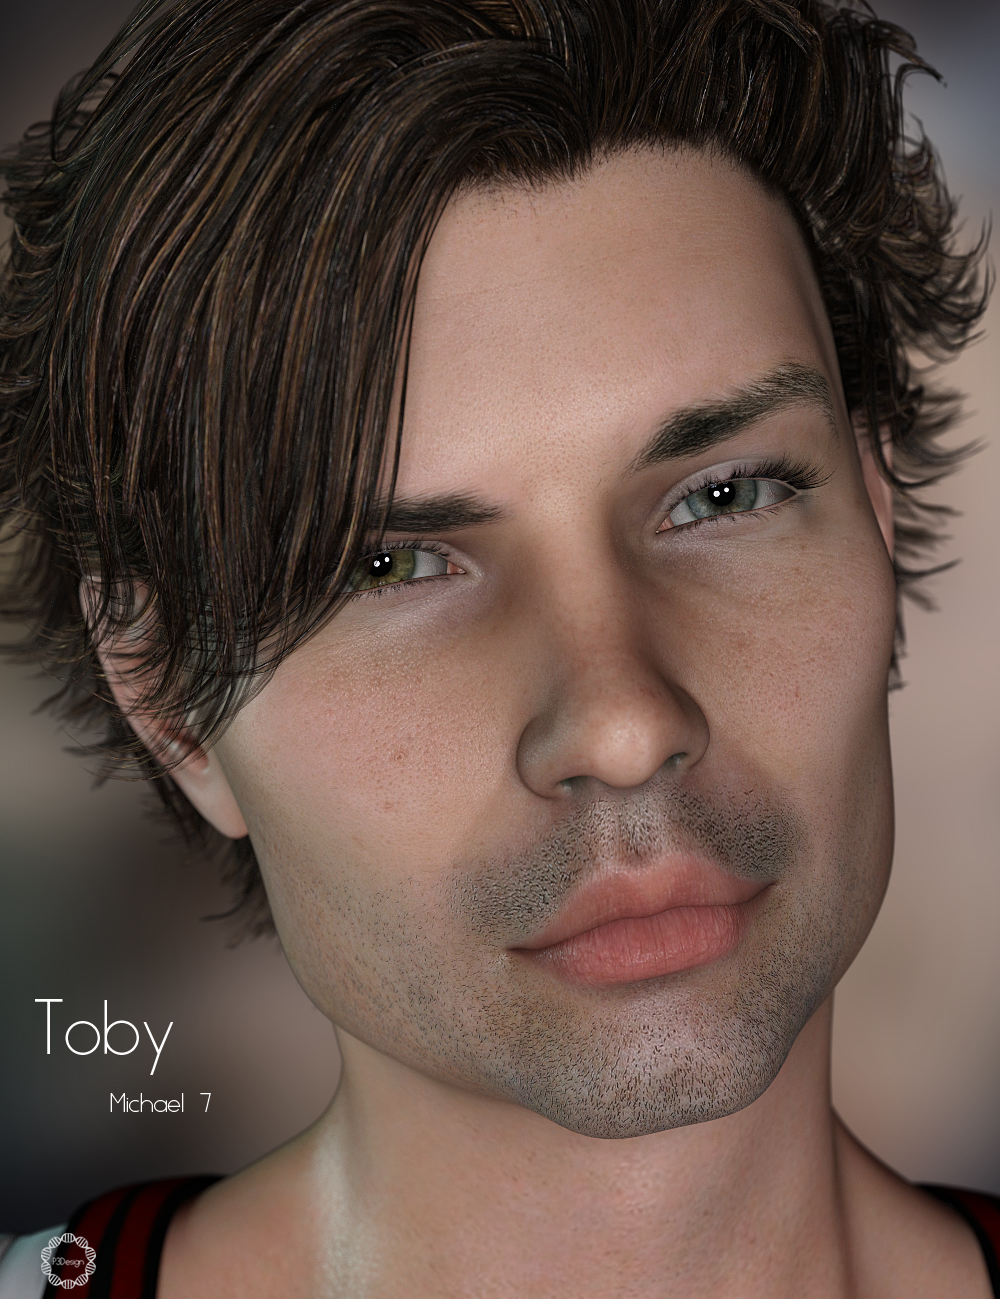 P3D Toby for Michael 7 by: P3Design, 3D Models by Daz 3D